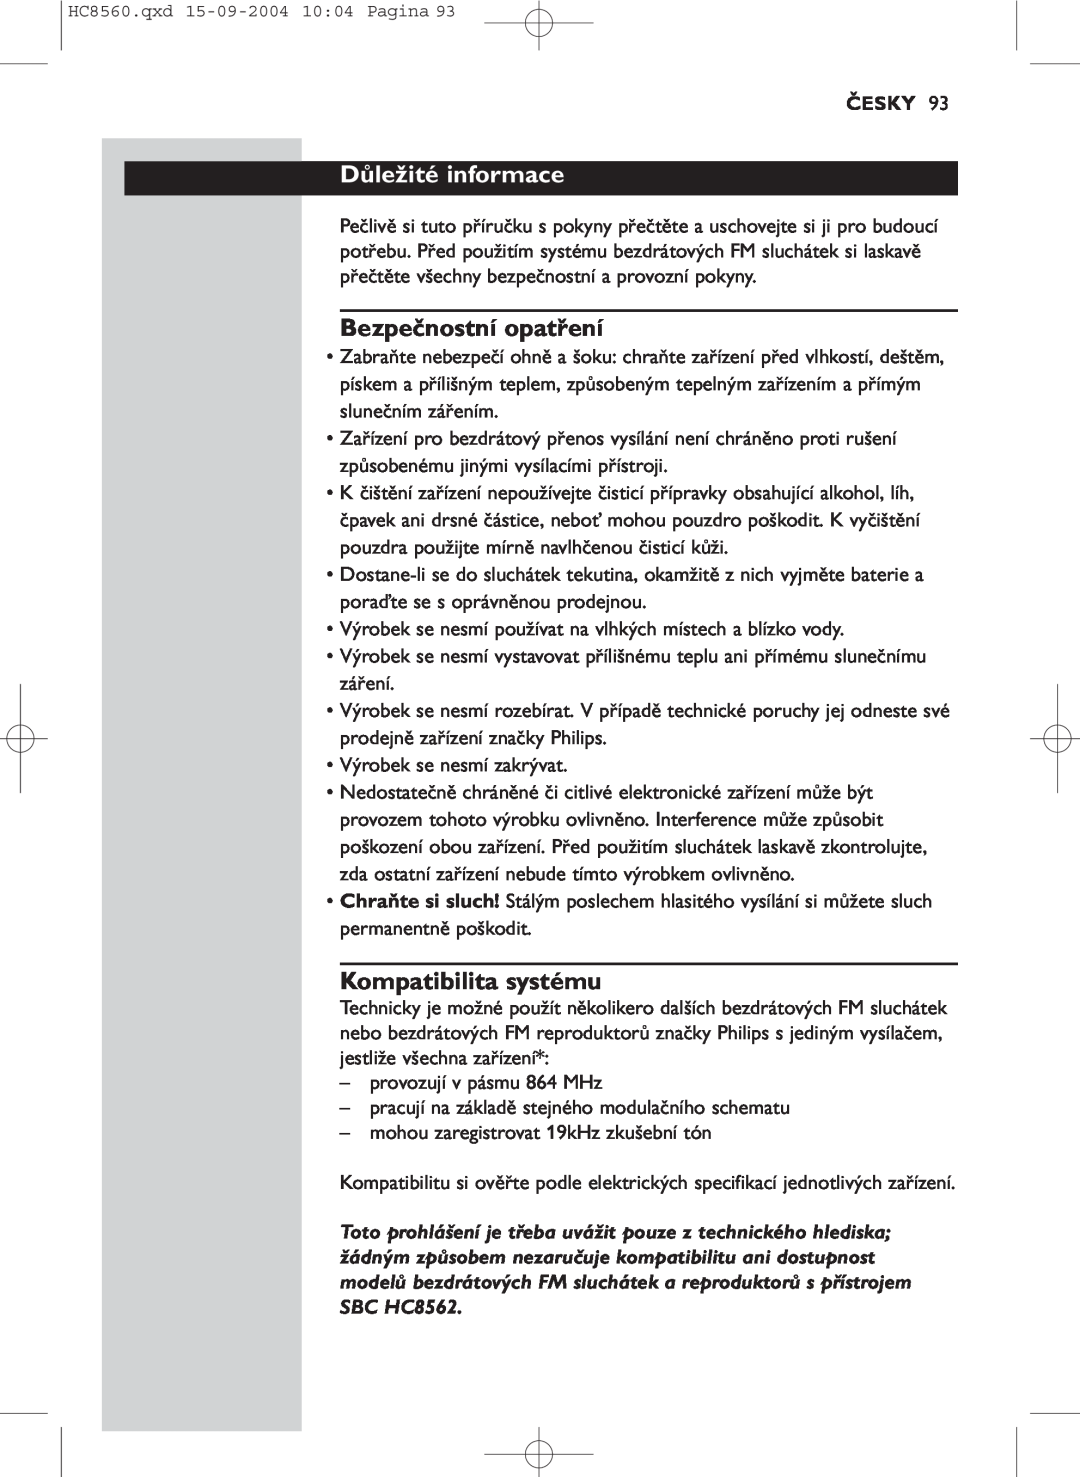 Philips HC 8560 manual Důležité informace, Bezpečnostní opatření, Kompatibilita systému, Česky 